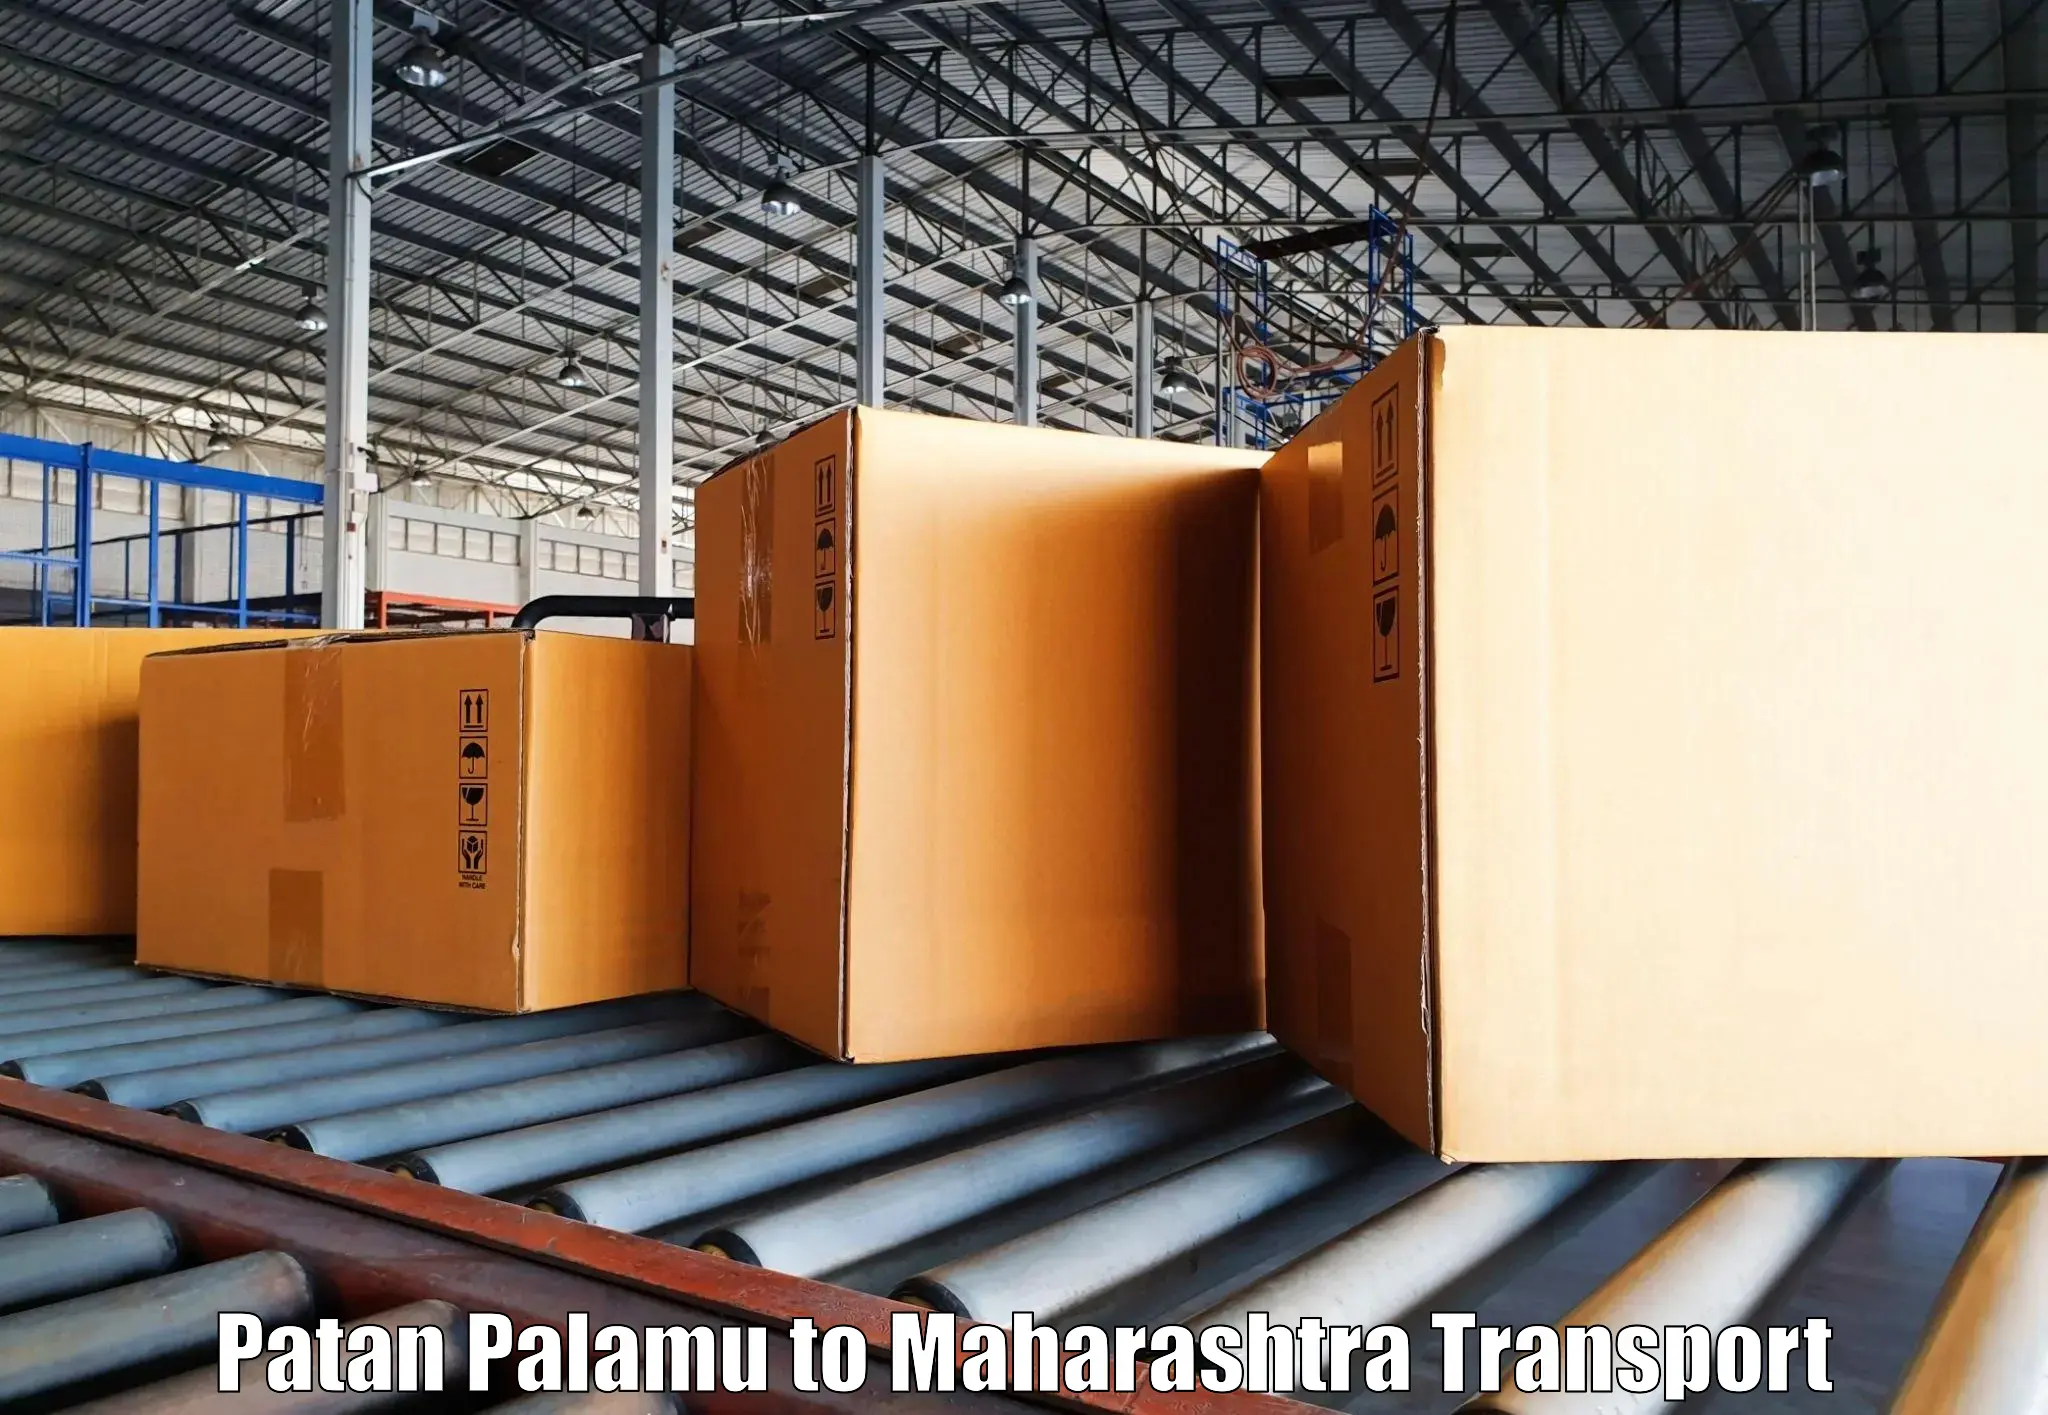 Nearest transport service Patan Palamu to Pune